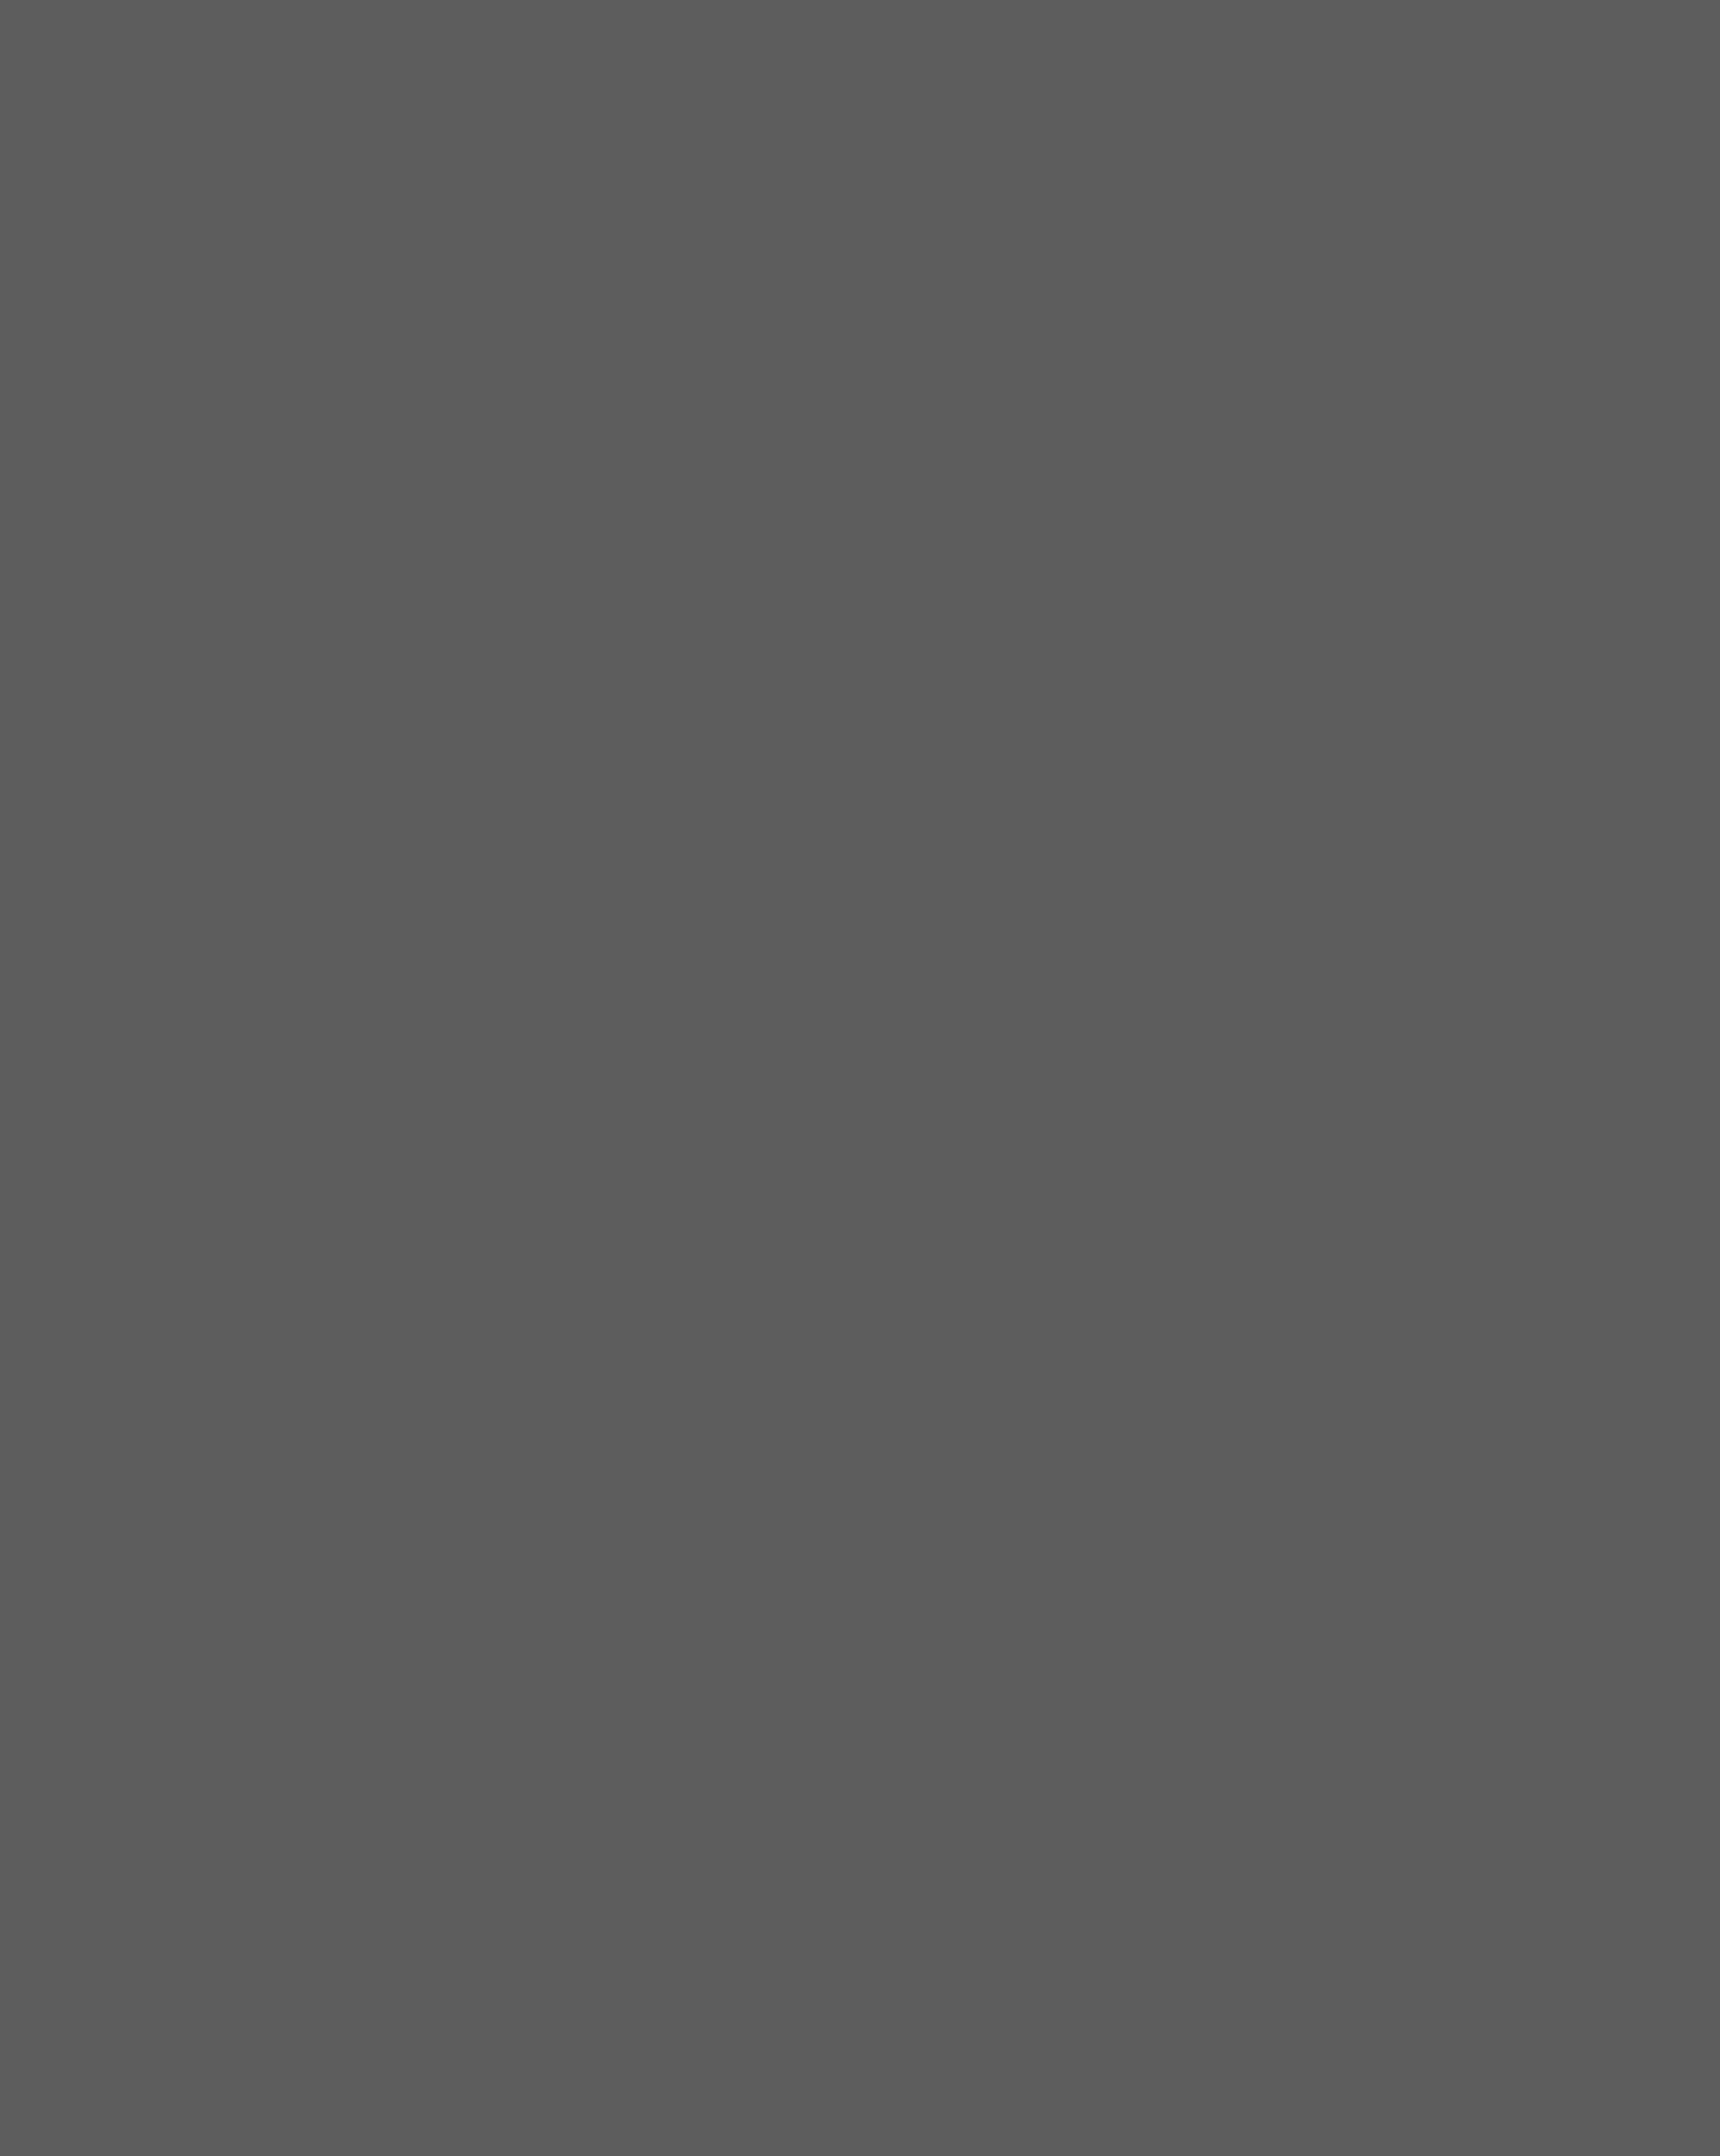 Великая княжна Анастасия Романова в байдарке, установленной на борту императорской яхты «Штандарт». Севастополь, 1914 год. Фотография: Репродукция ТАСС